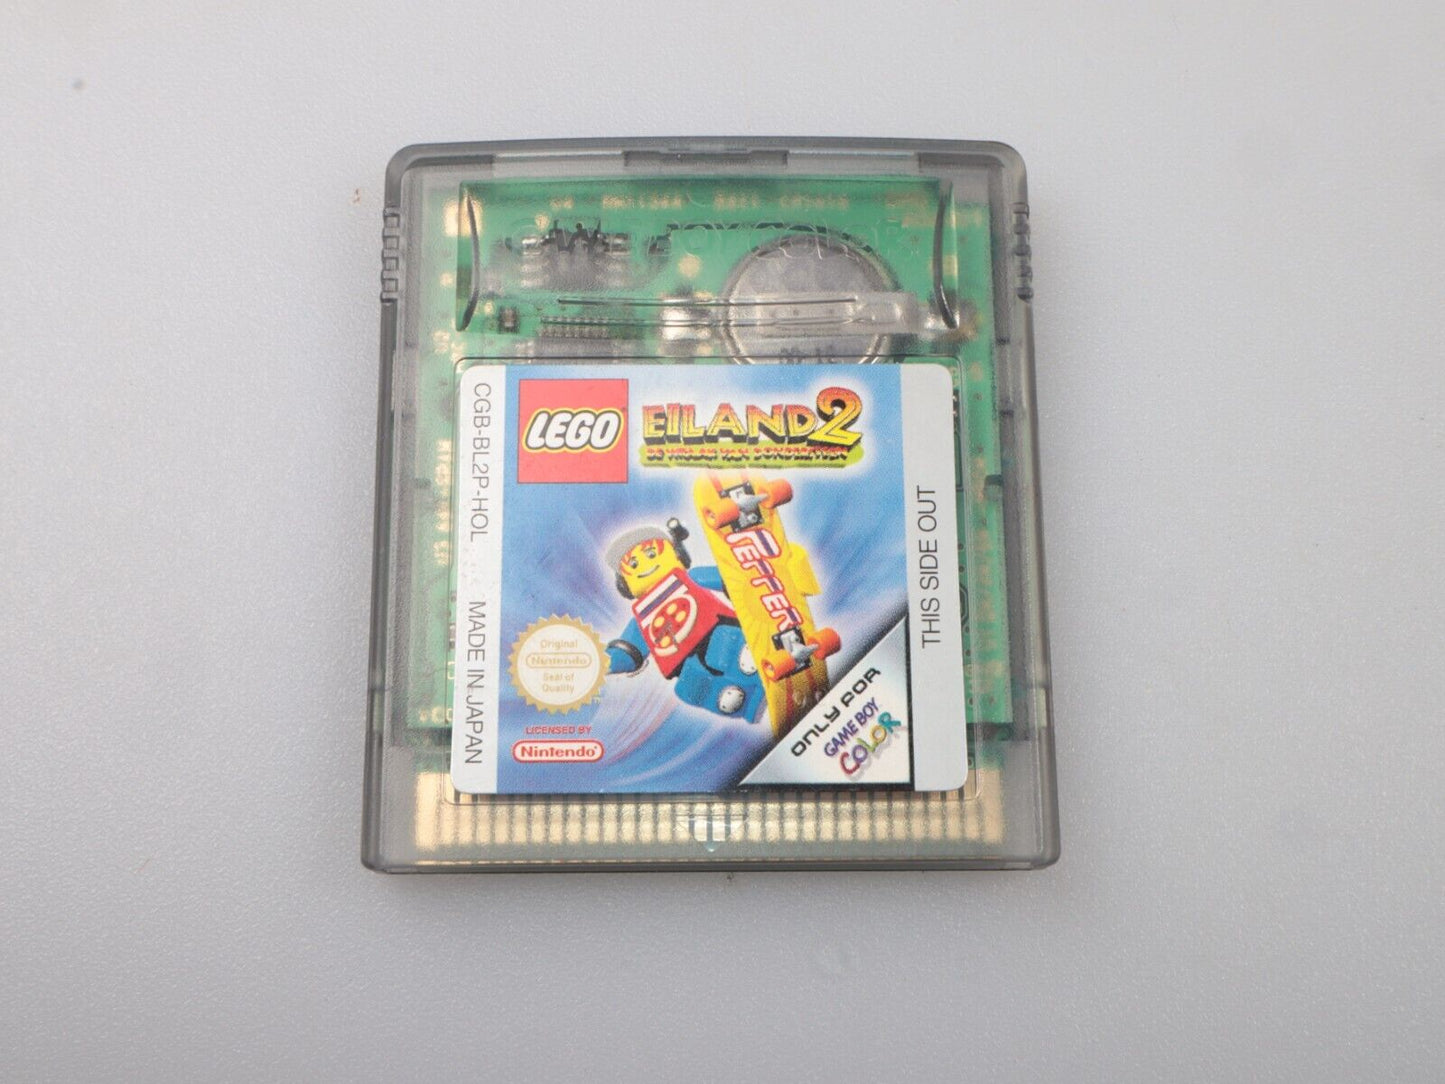 GBC | Gameboy-kleur | Lego Eiland 2 | HOL | Nintendo-cartridge 